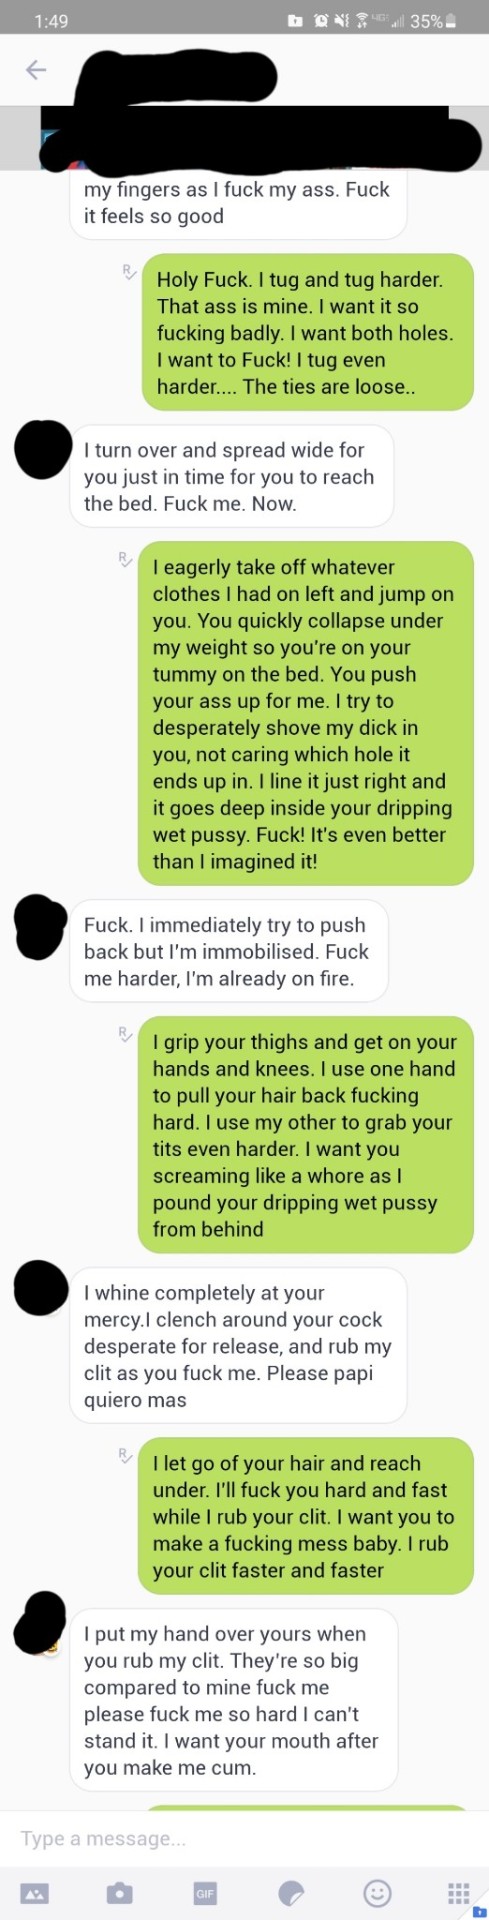 I rub my moist cum-hole merely for u